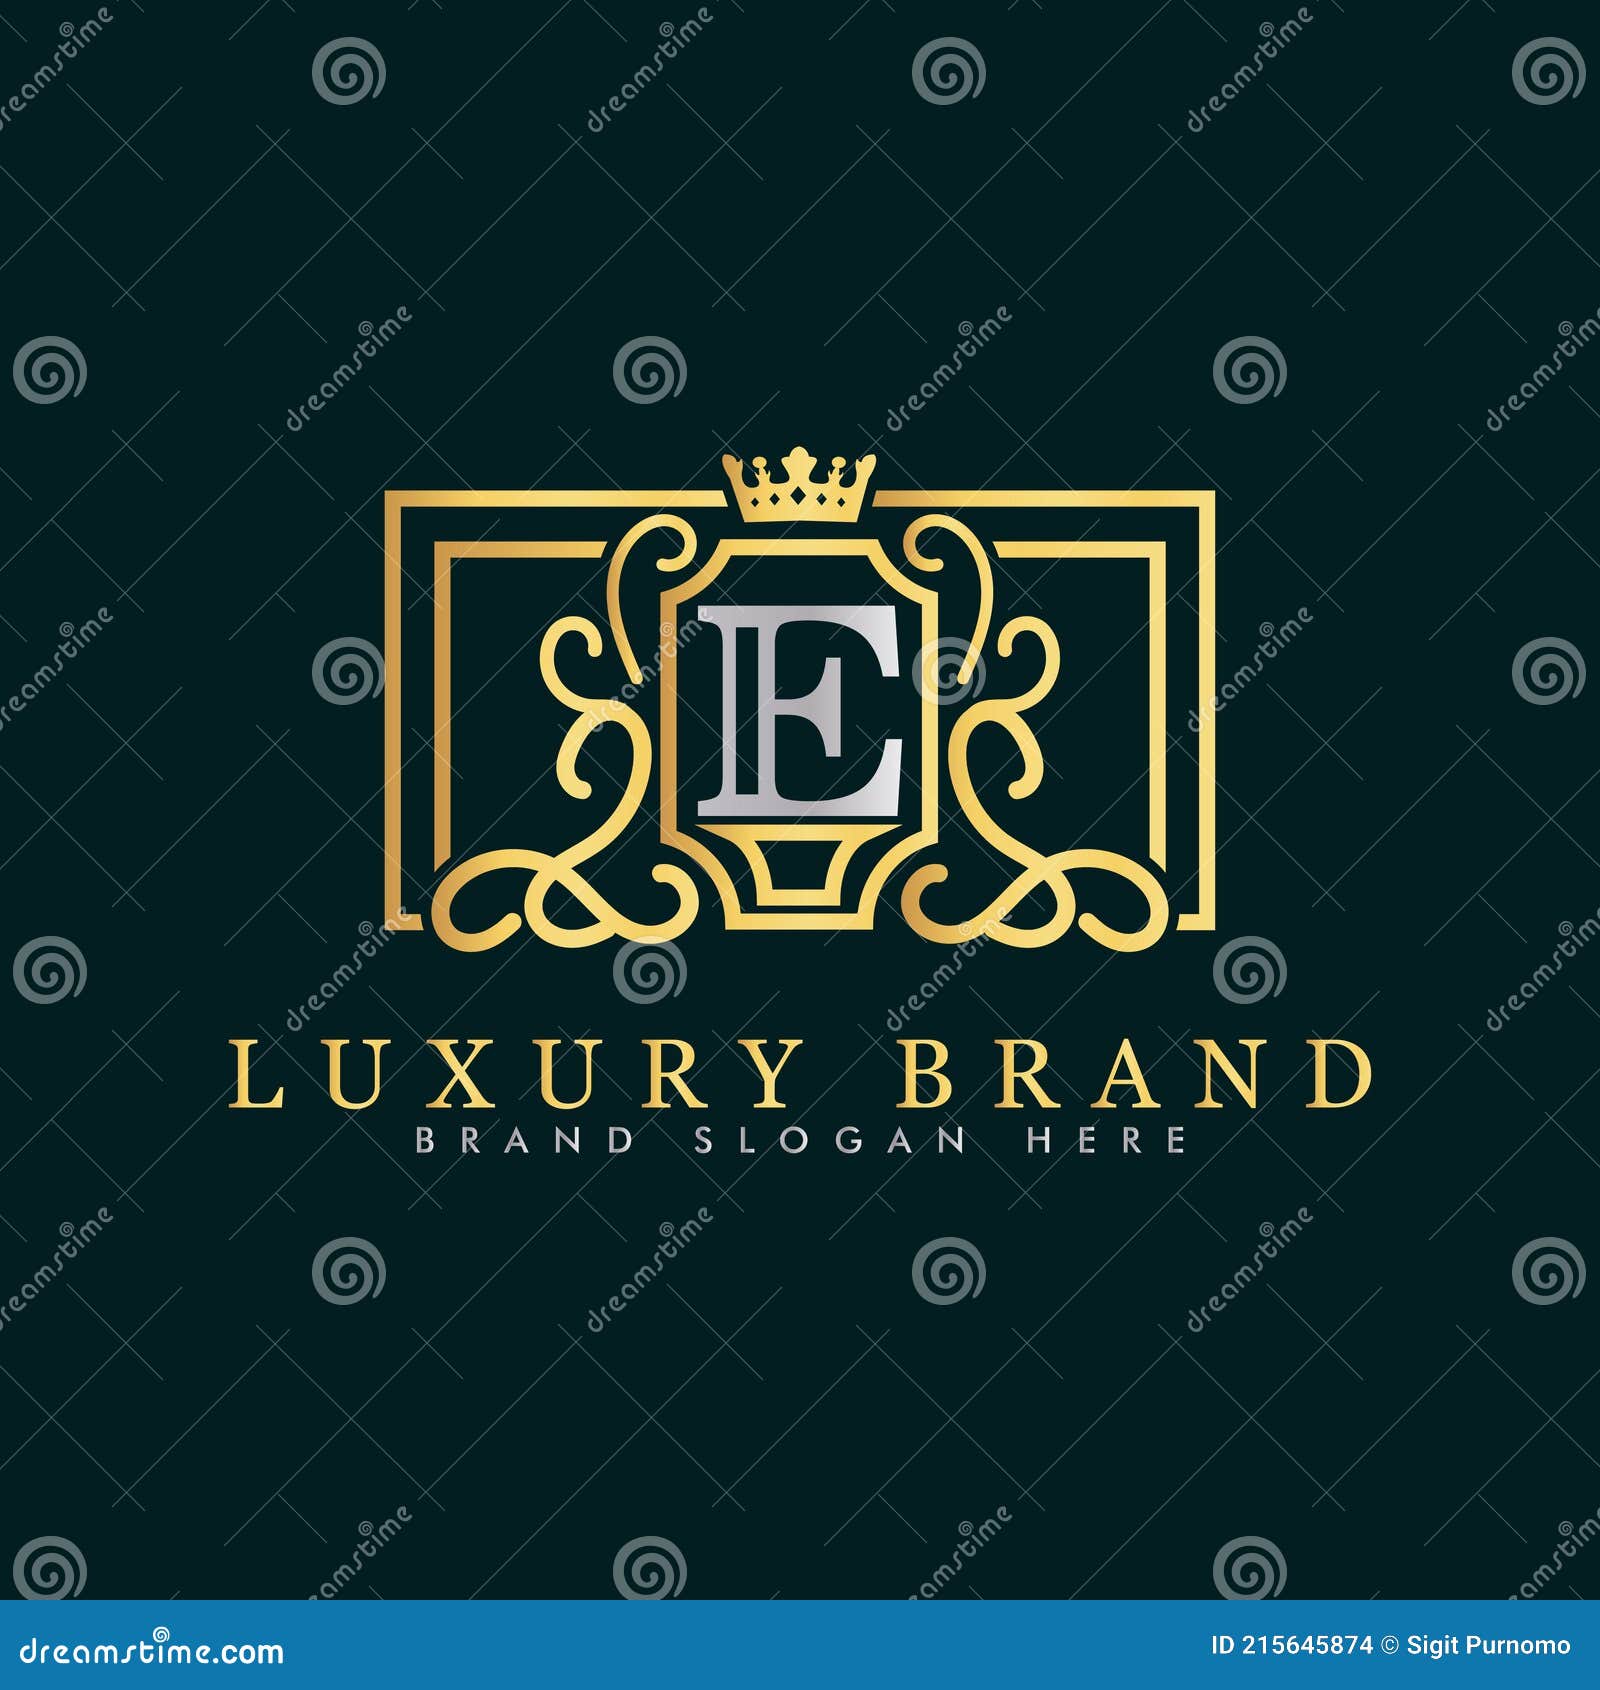 Golden luxury logo design stock vector. Illustration of name - 215645874